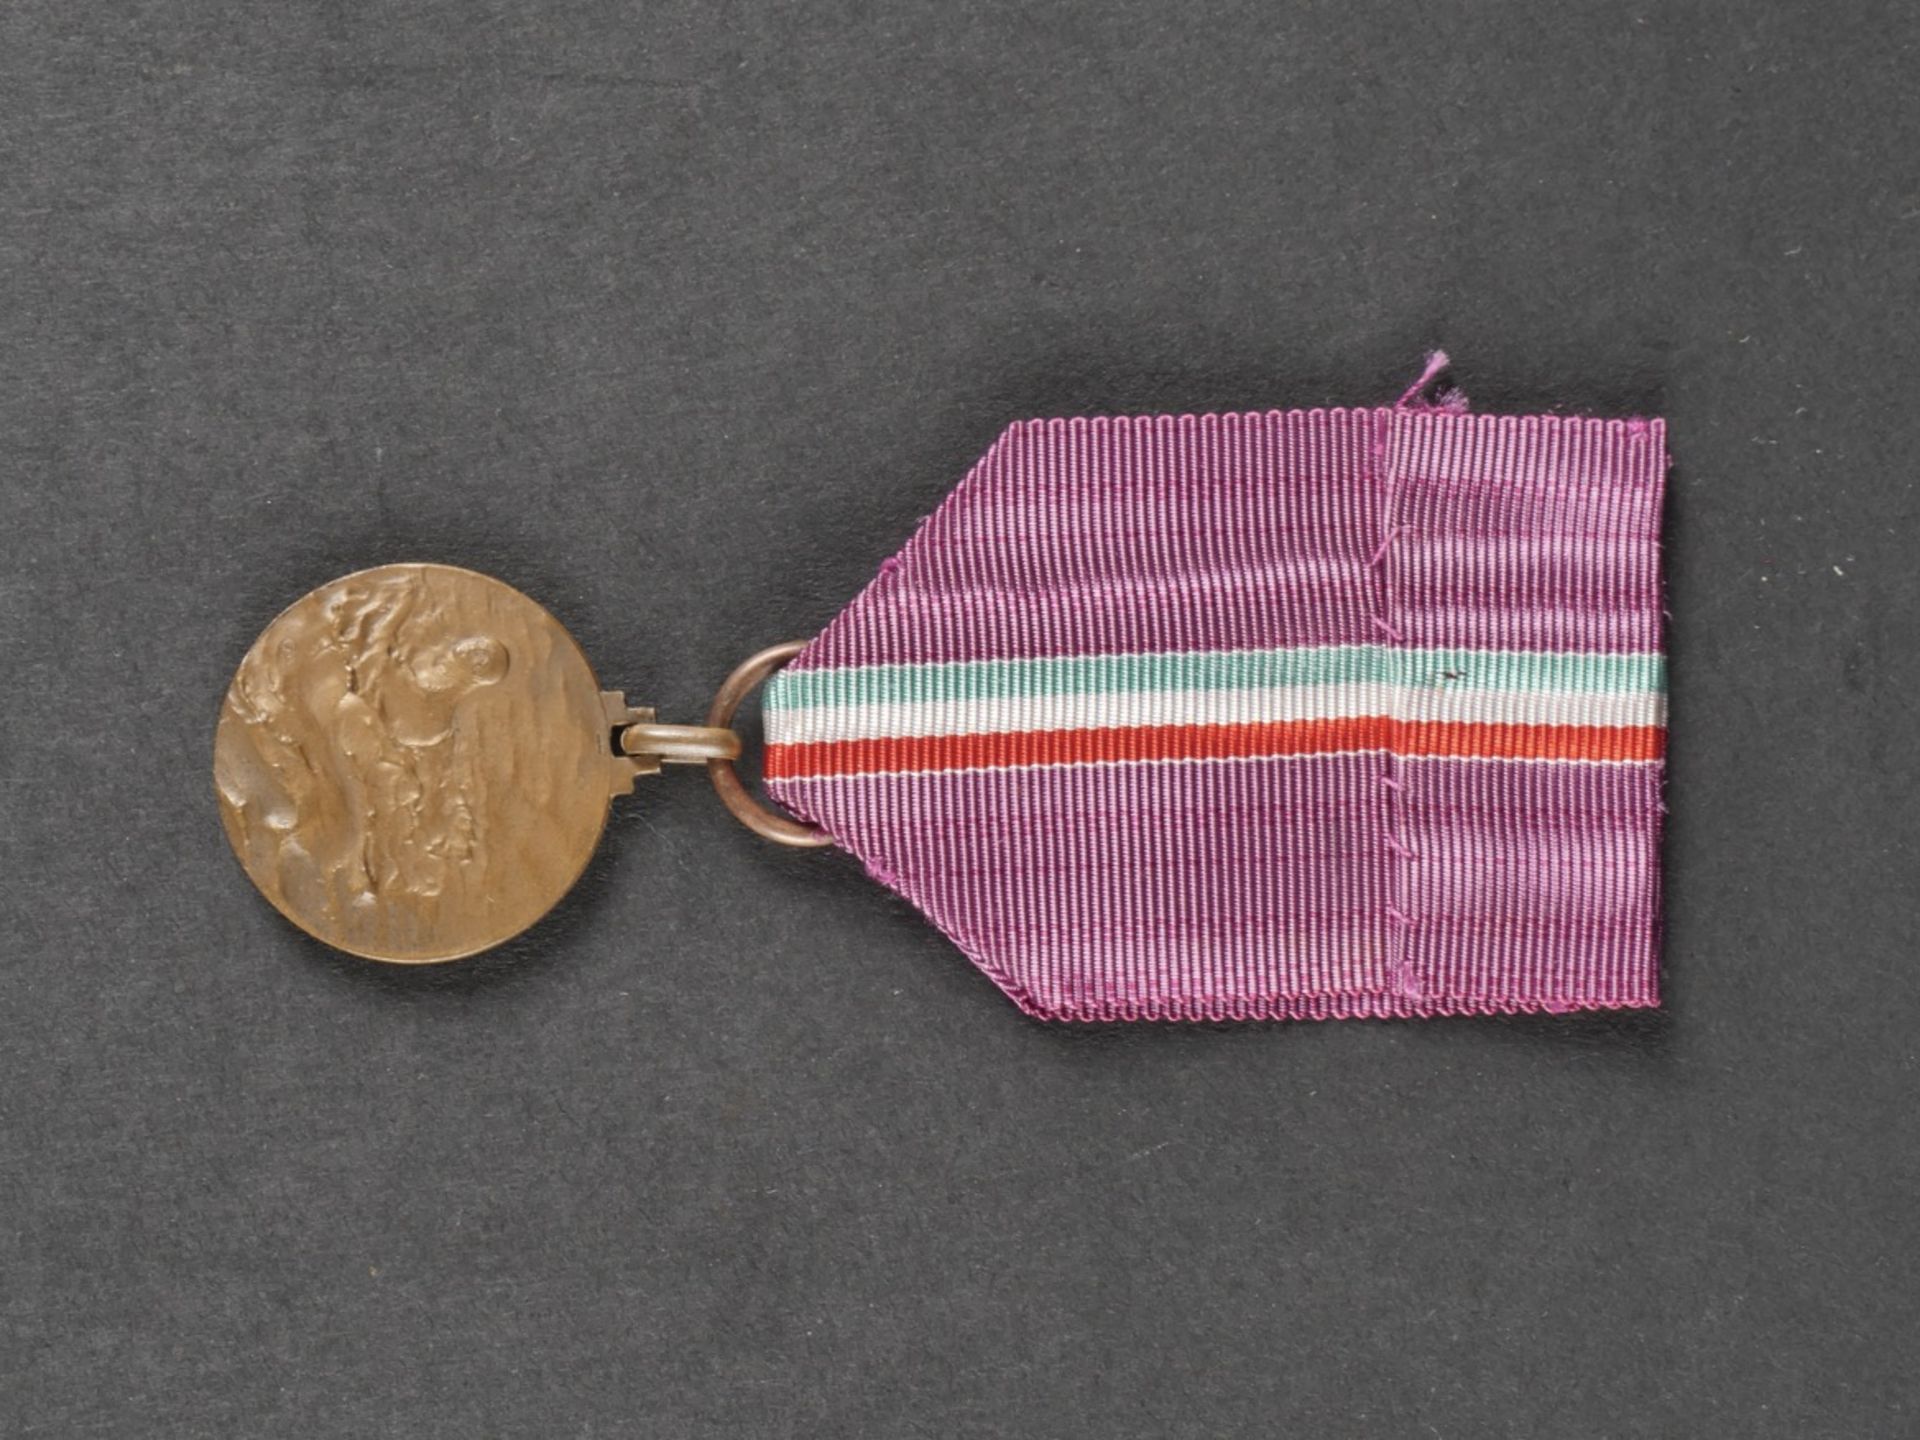 Glaive de recompense pour le 100 metres dos des championnats sportifs de la jeunesse dEurope en 194 - Image 19 of 19